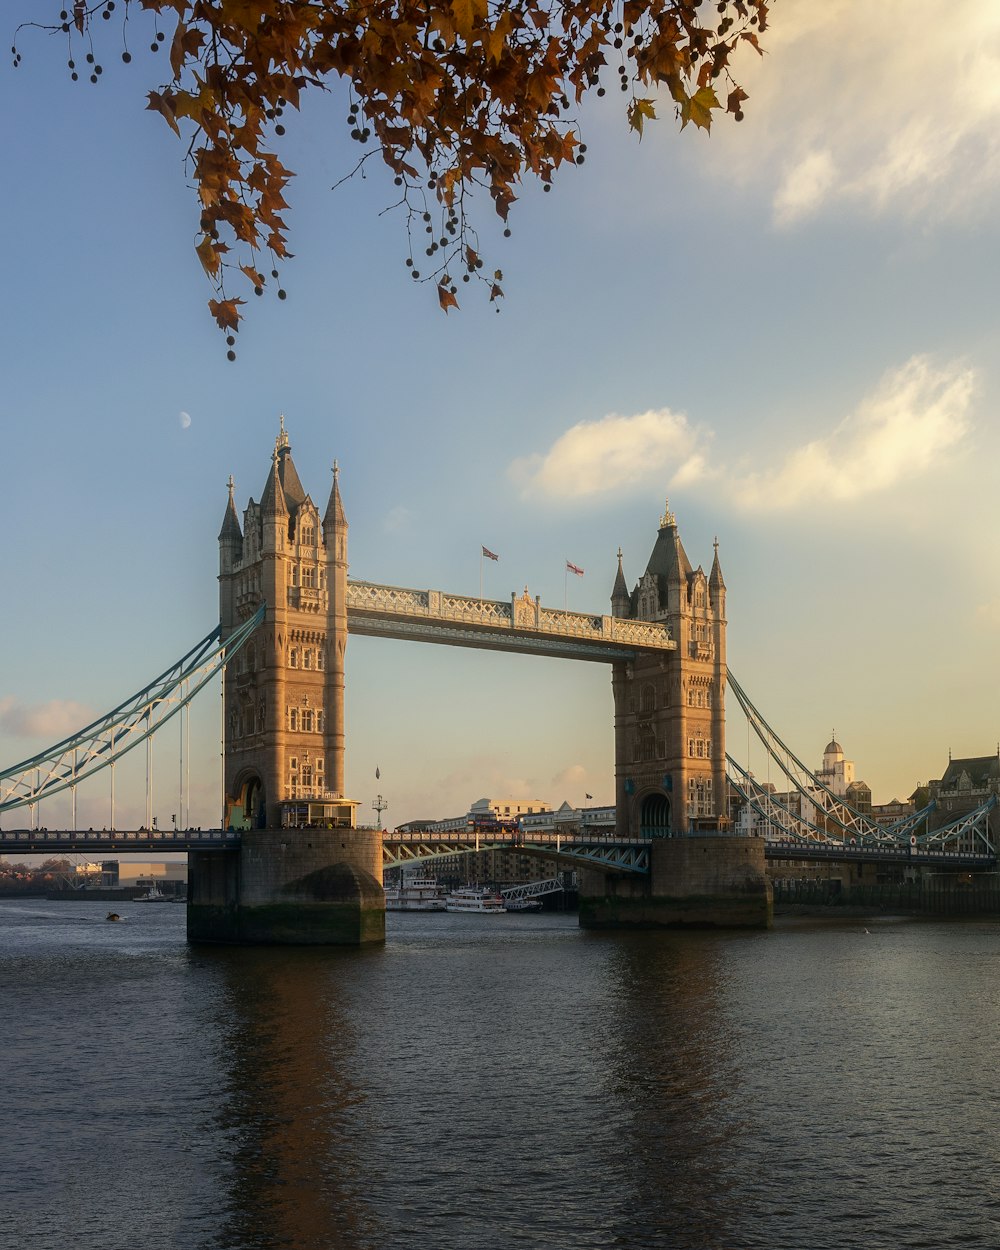 Tower Bridge, London during daytime